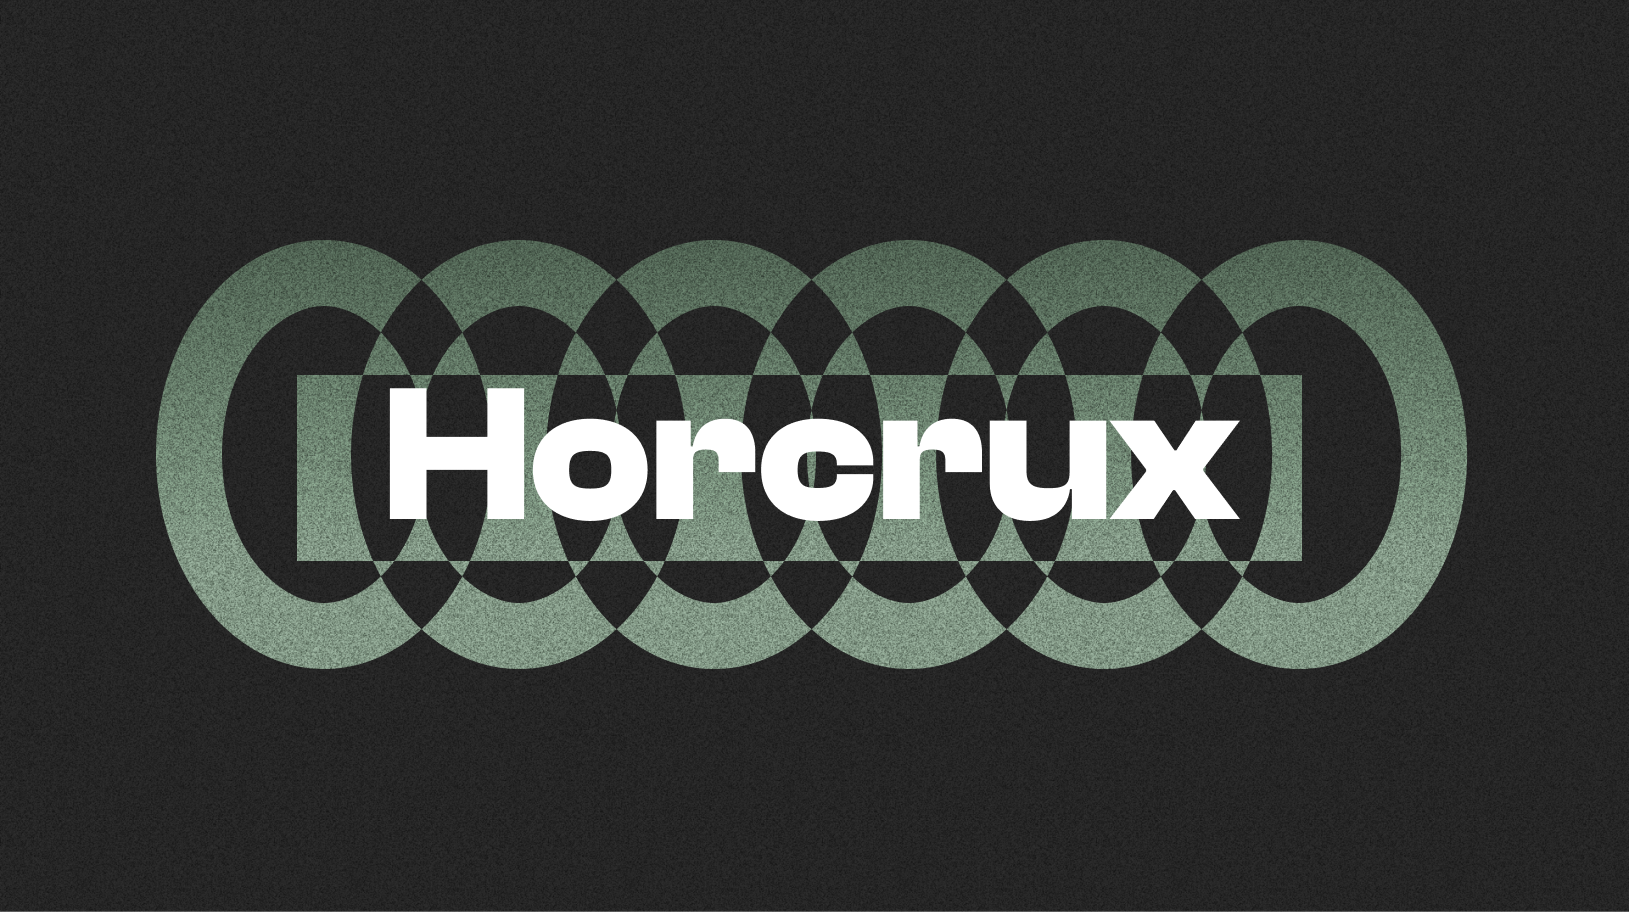 Horcrux v2.1 released